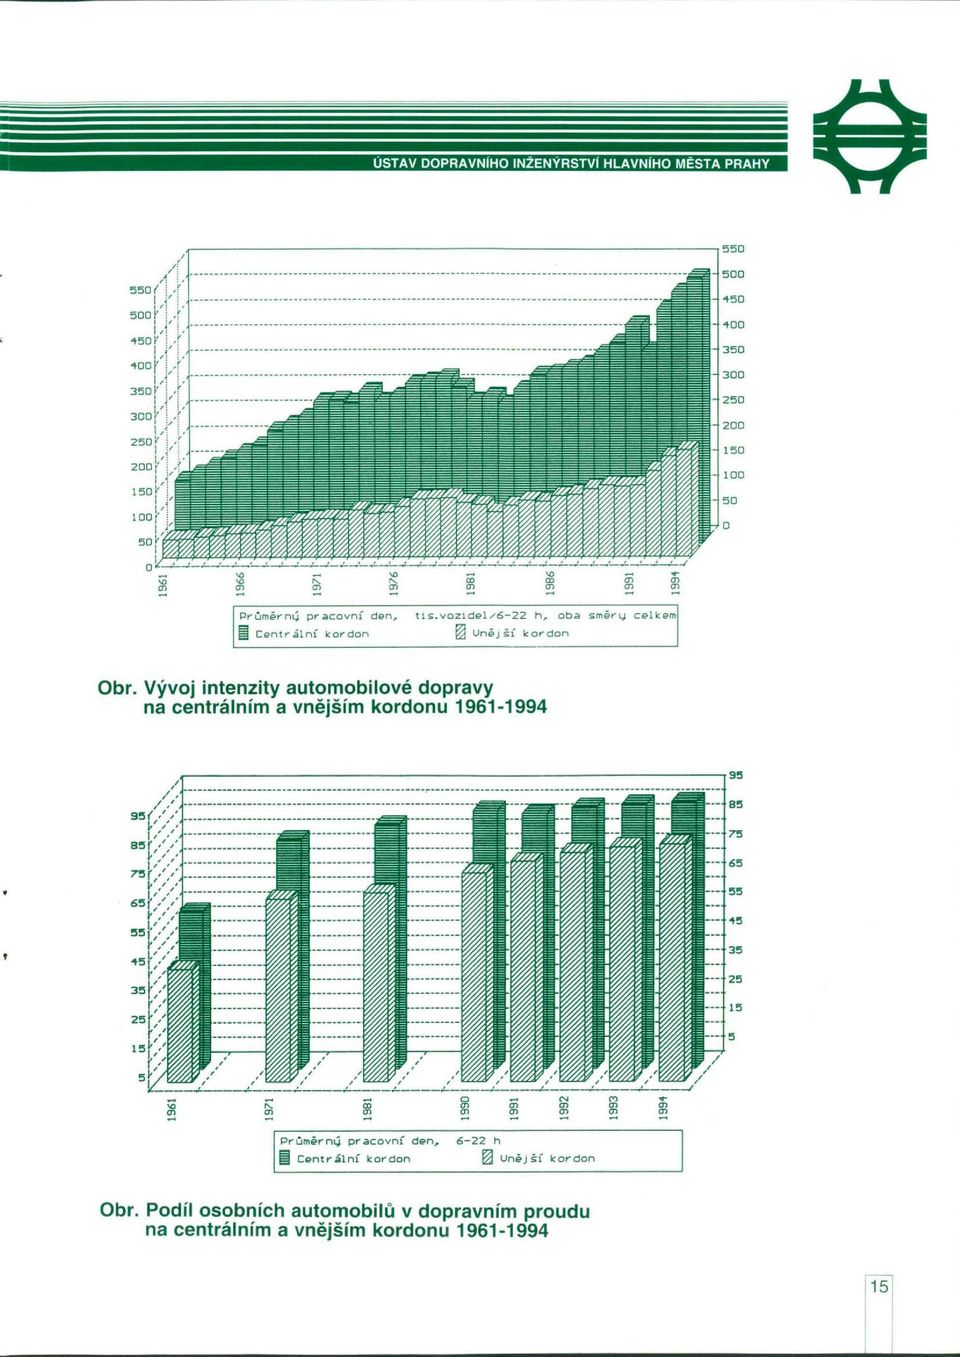 Vývoj intenzity automobilové dopravy na centrálním a vnějším kordonu 1961-1994 Průměrný